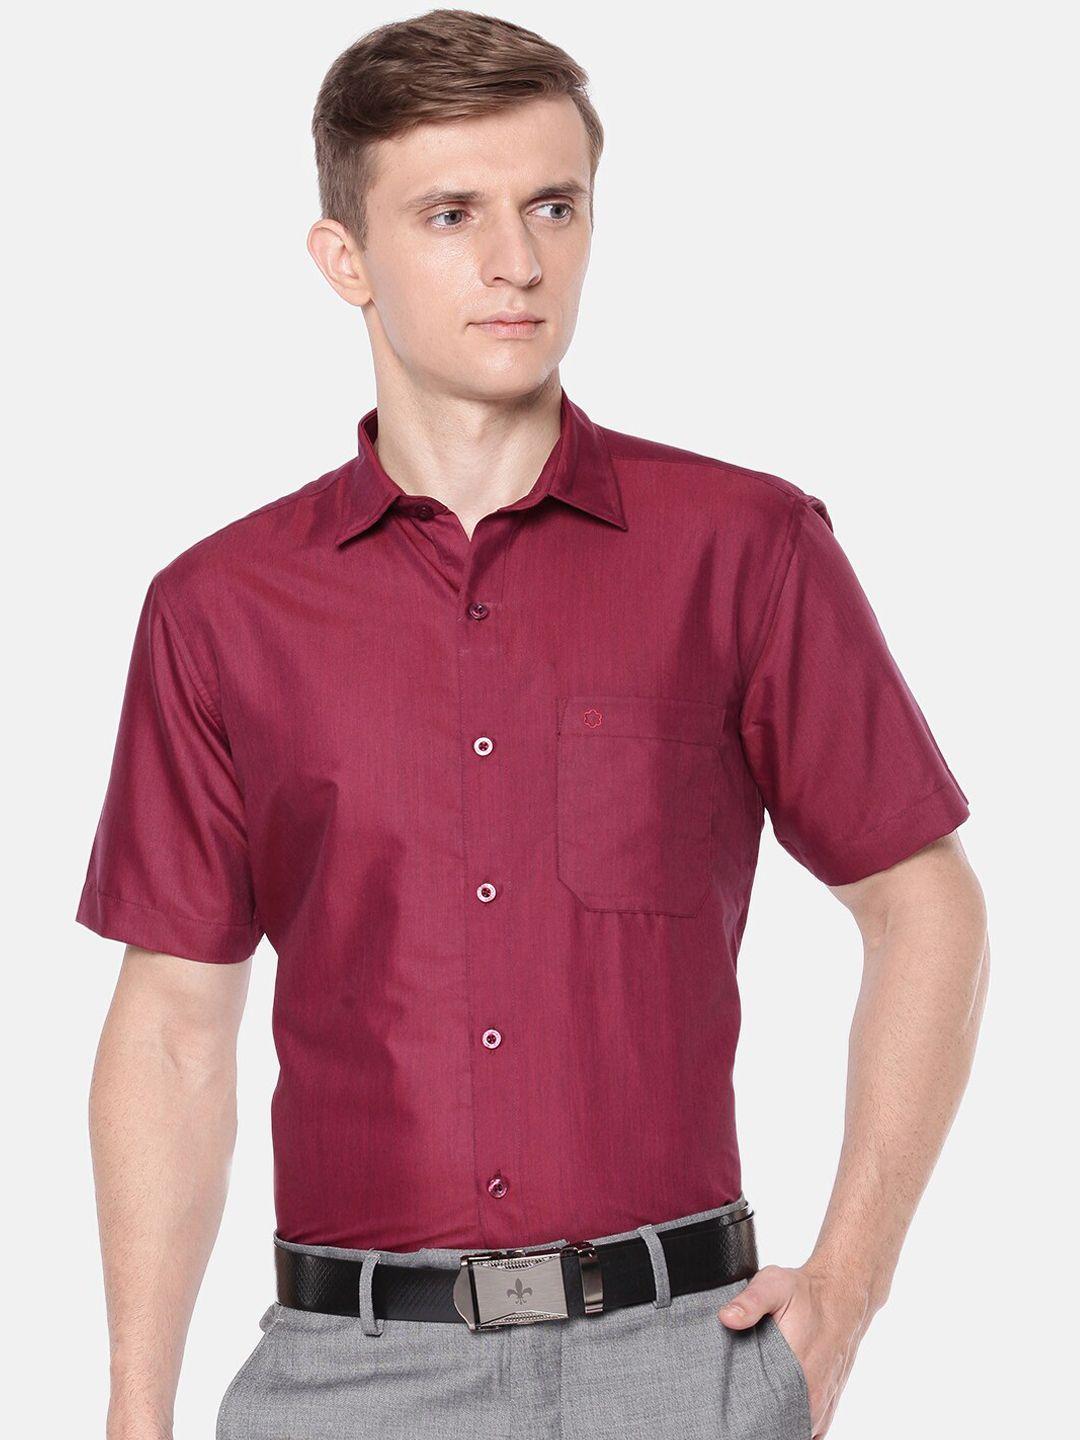 jansons men maroon regular fit solid formal shirt